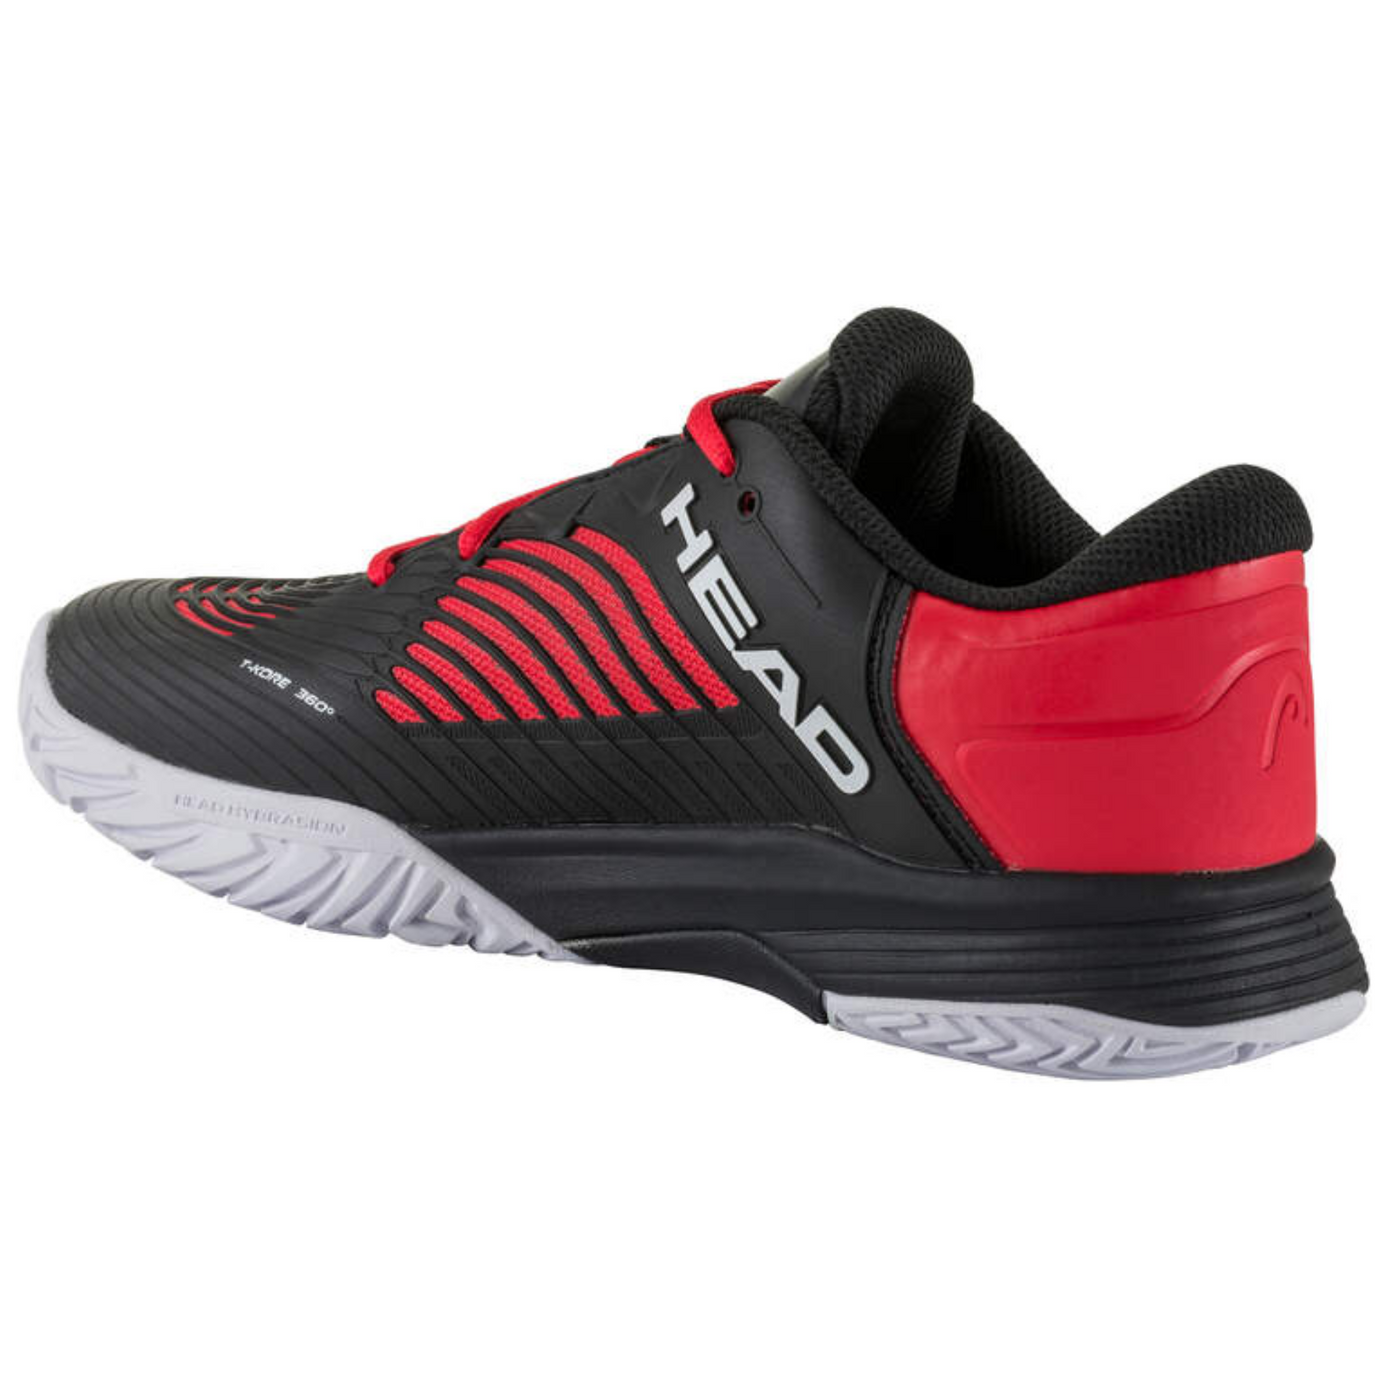 Head Revolt Pro 4.5 Junior Tennis Shoes - Black/Red